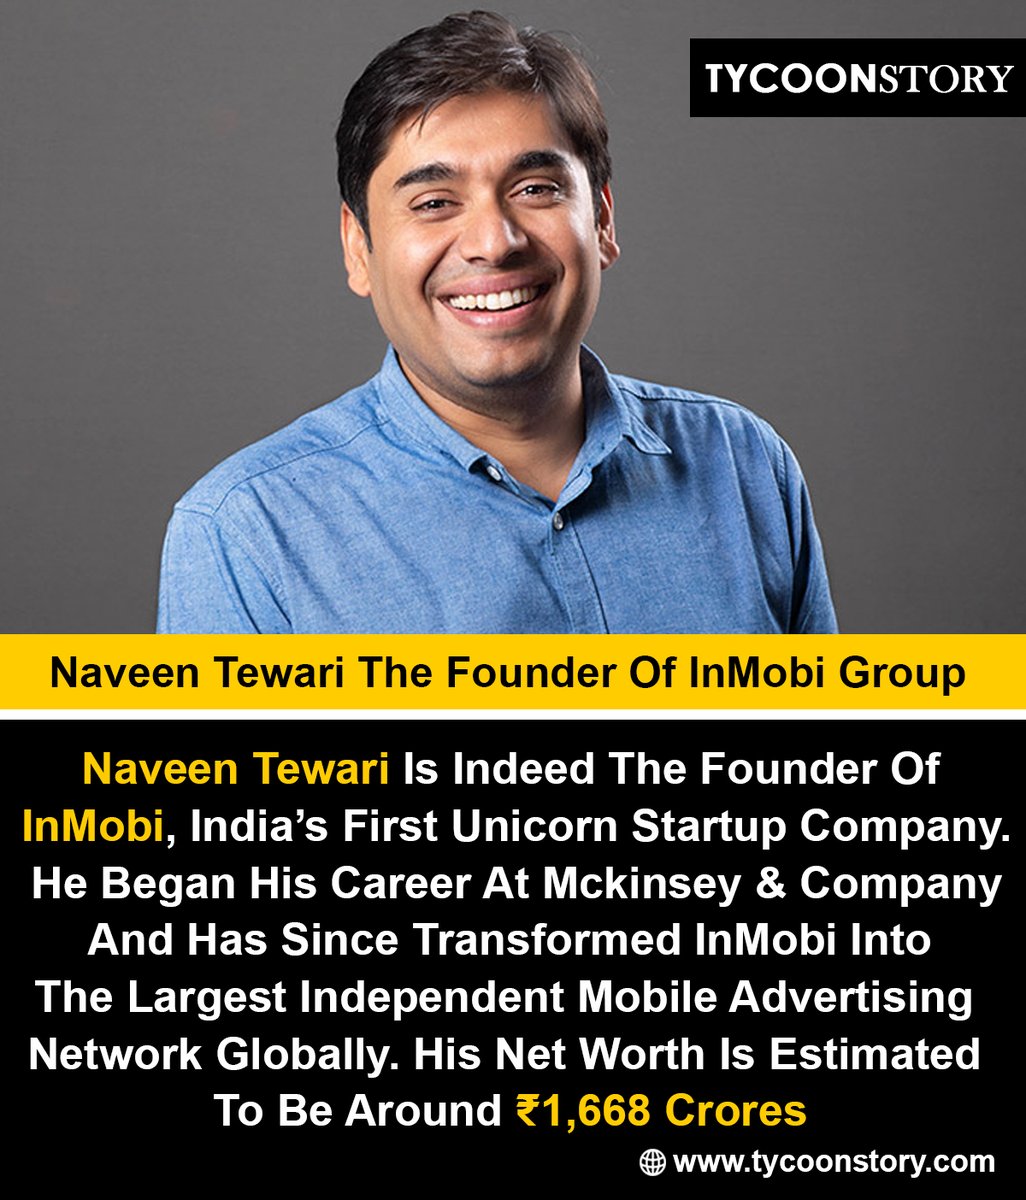 Naveen Tewari The Founder Of InMobi Group #InMobi #MobileAdvertising #Entrepreneurship #TechInnovation #DigitalMarketing #TechLeadership #MobileApps #DigitalTransformation #Innovation #BusinessSuccess #MobileTechnology #TechEntrepreneur @InMobi tycoonstory.com